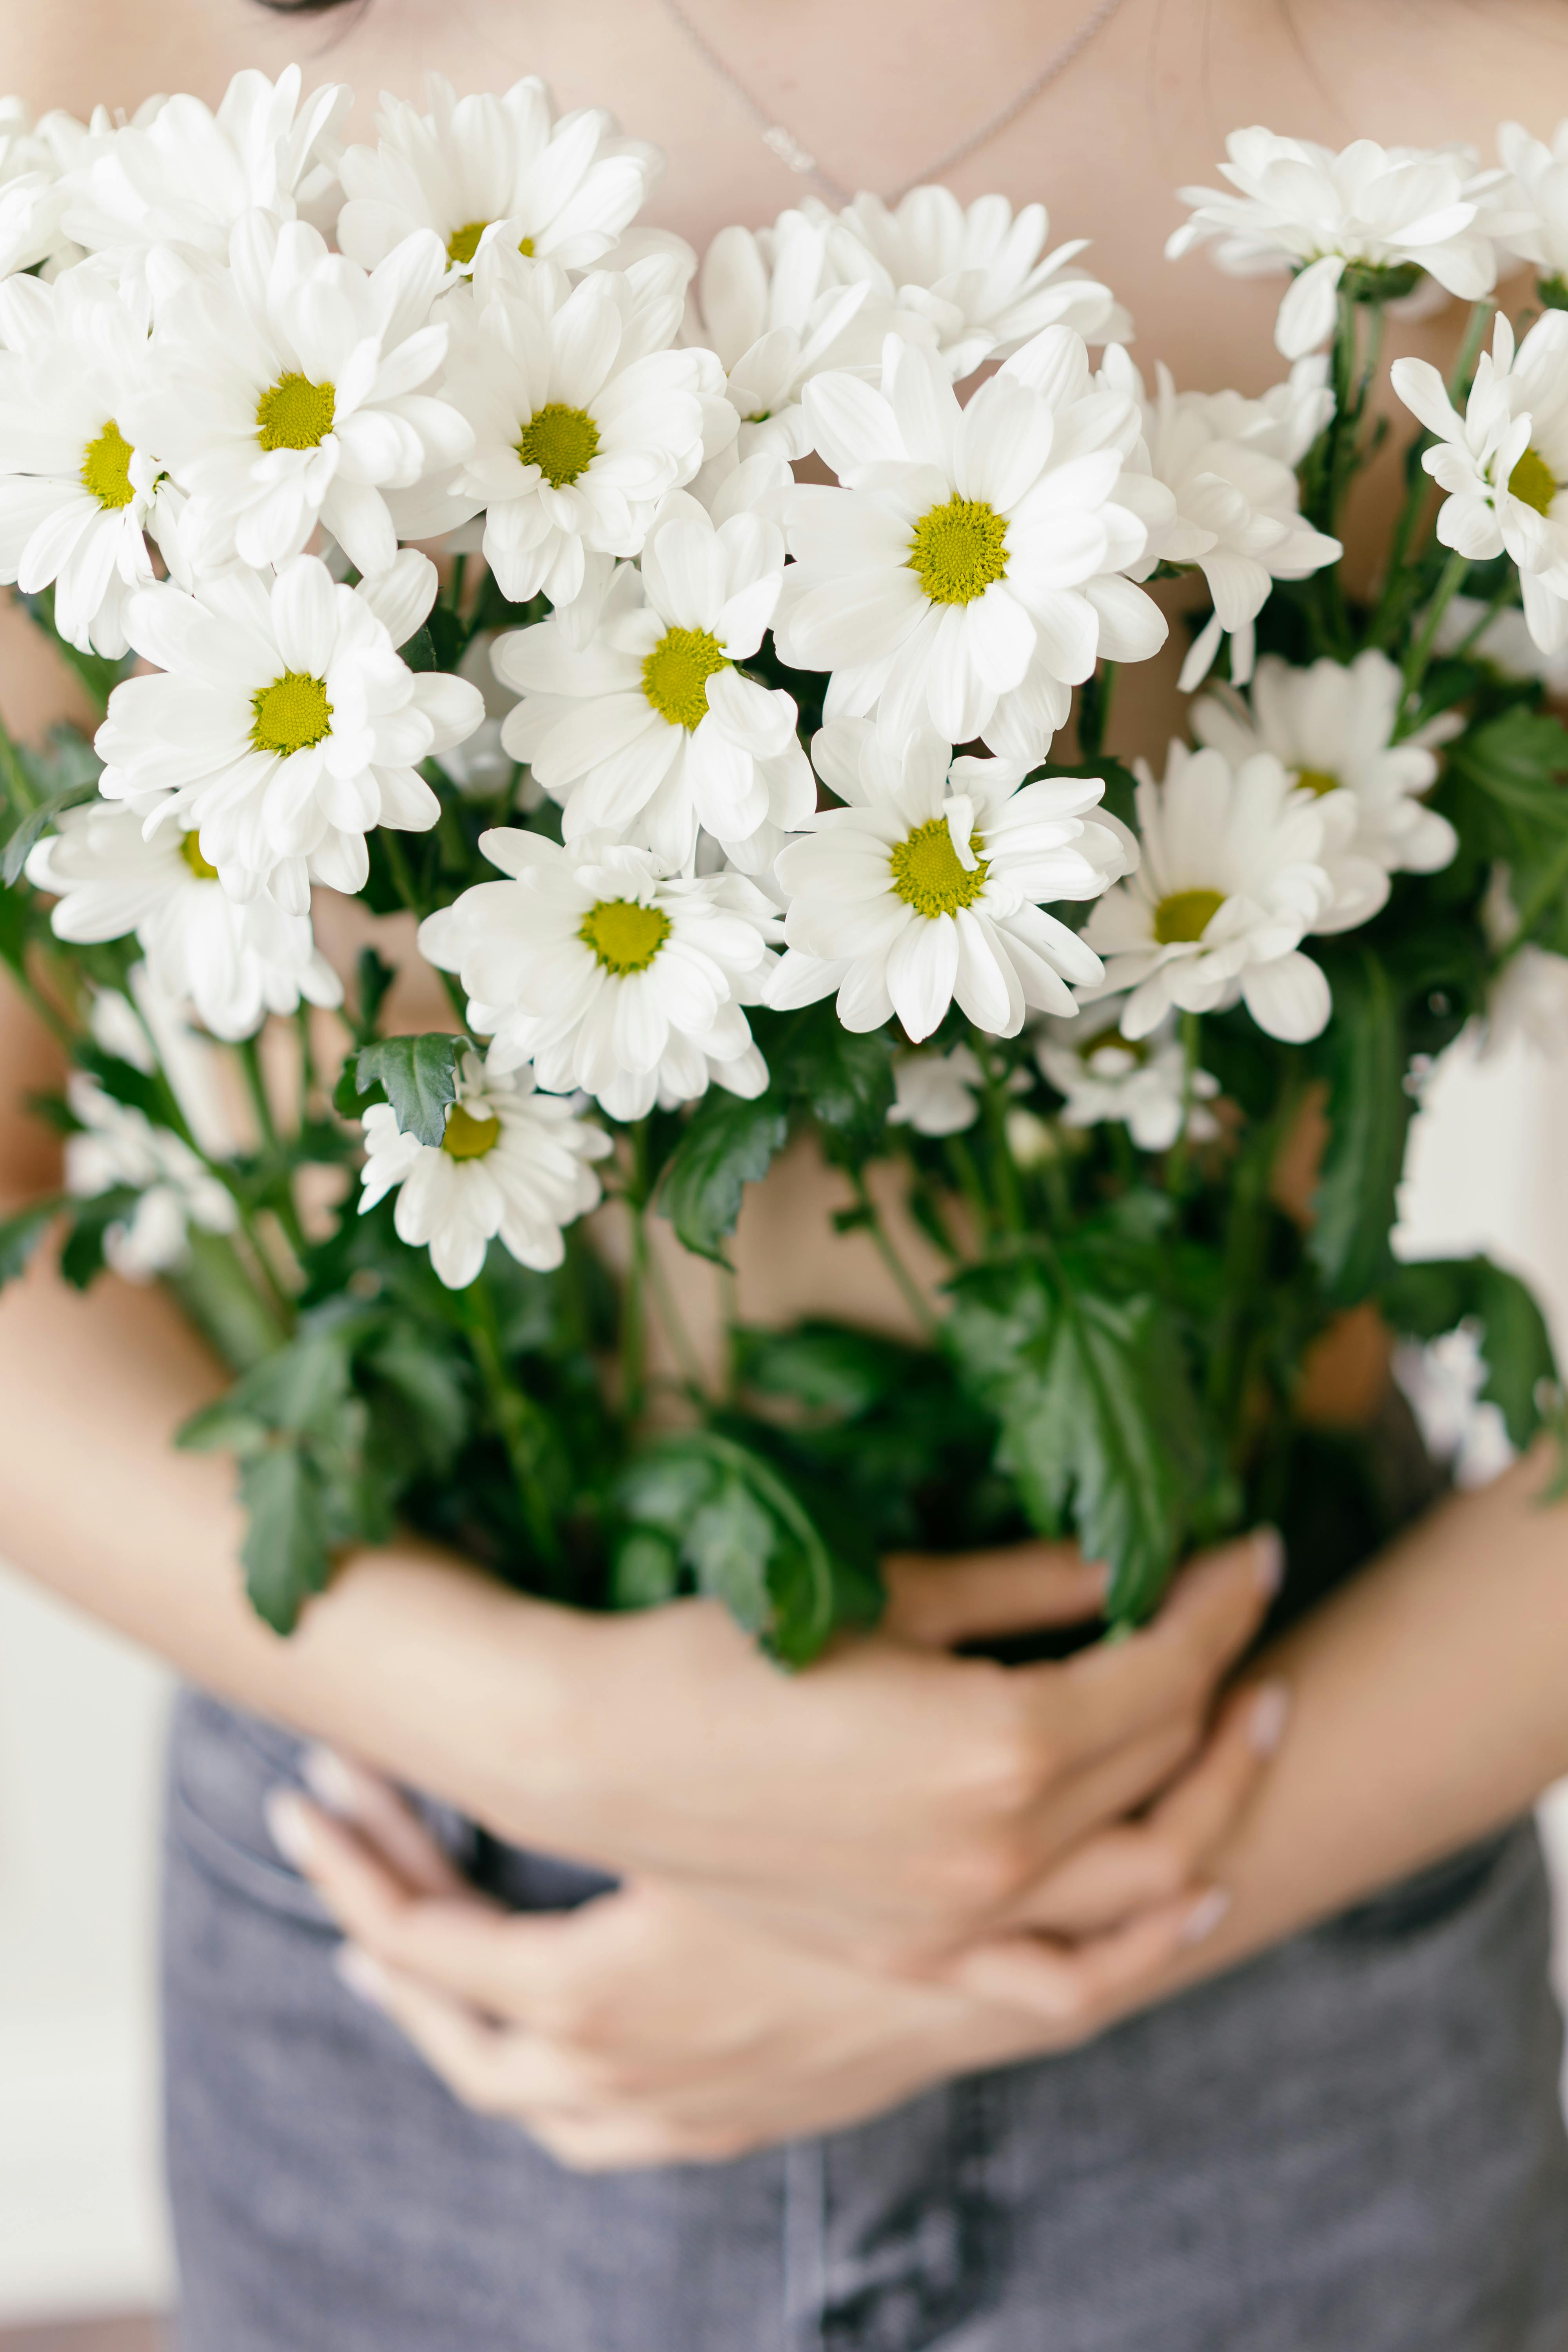 Ý nghĩa của Hoa cúc dại  Blog tình yêu  Flowers Chrysanthemum flower  Wild flowers